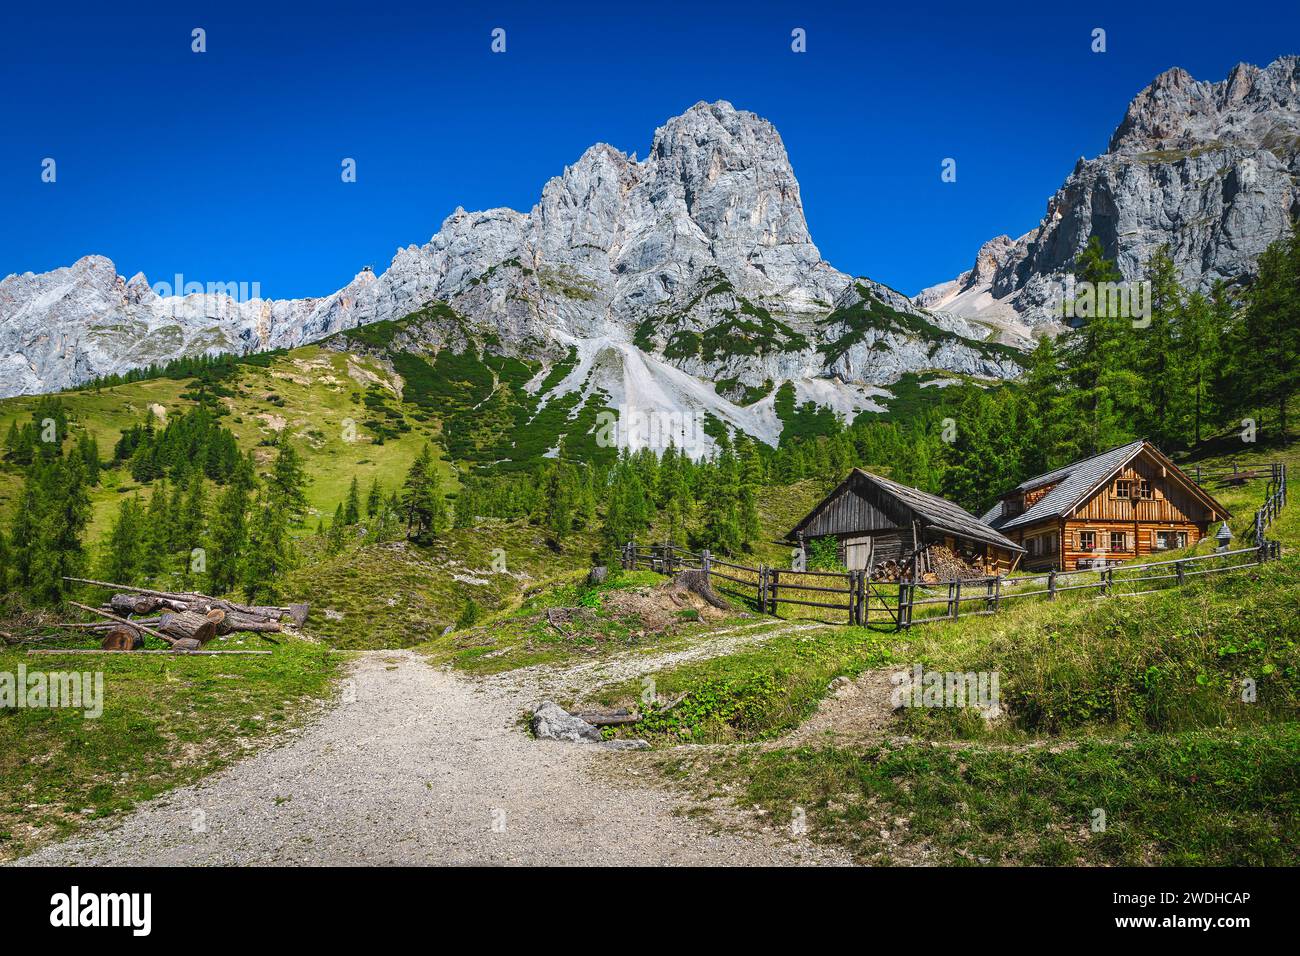 Grande randonnée et emplacement de voyage, maison rurale en bois dans la forêt de pins verts. Étonnantes montagnes de Dachstein en arrière-plan, Ramsau am Dachstein, Styrie, Banque D'Images